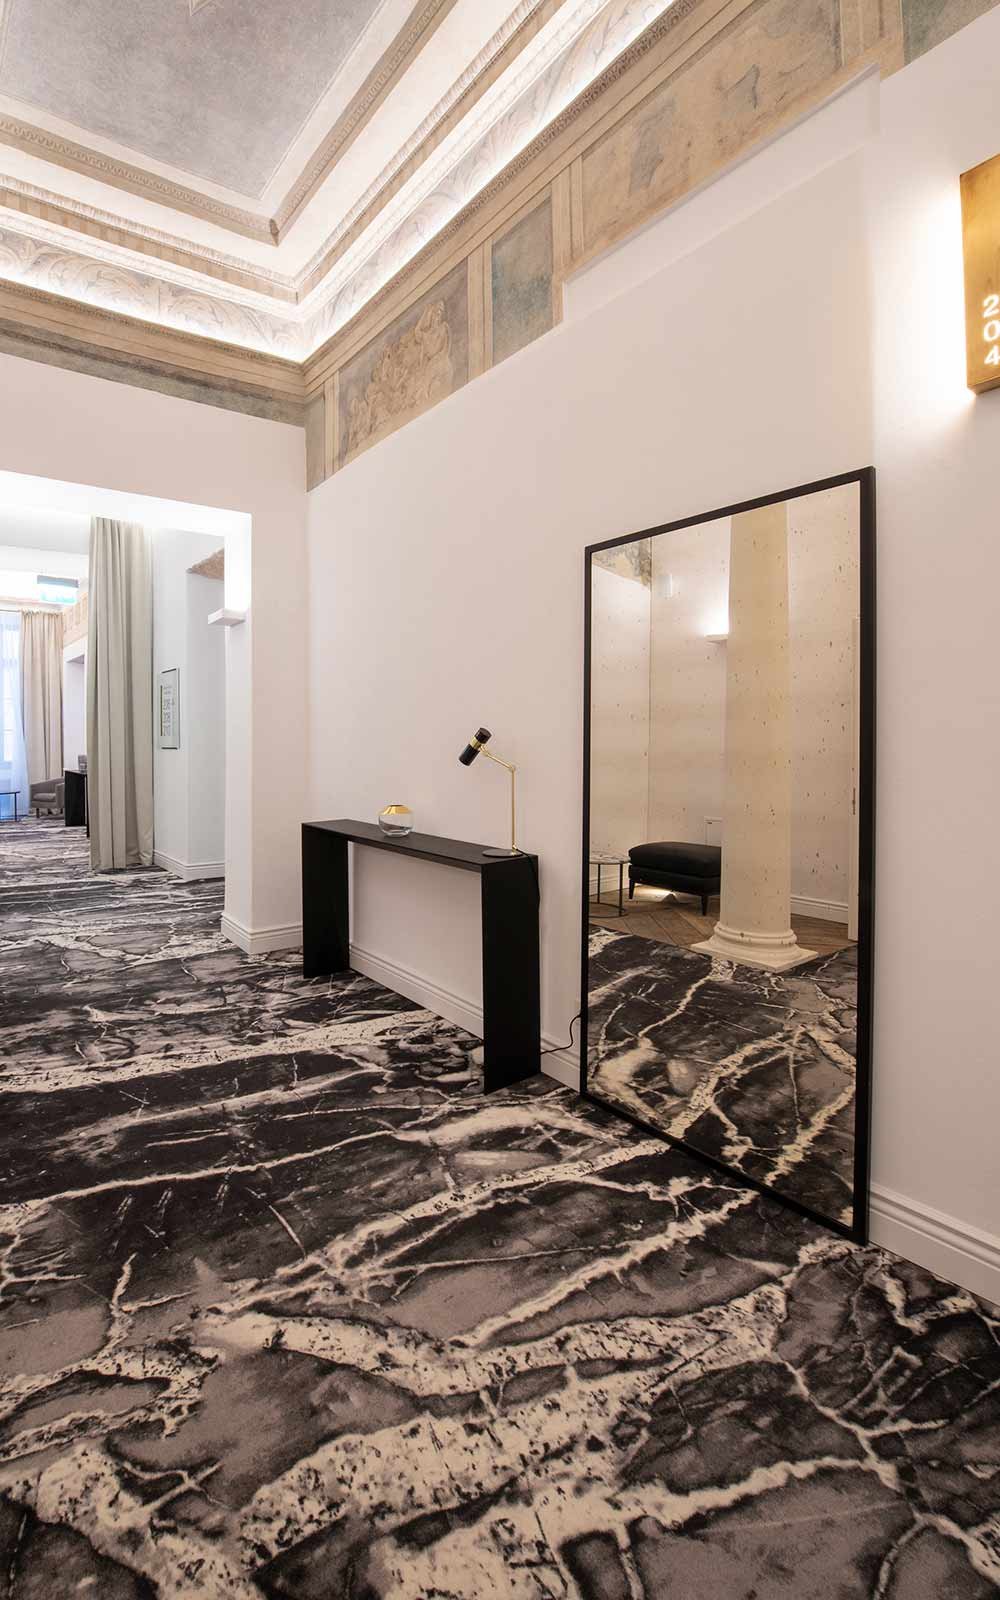 Hotel Teppichboden - Designthema 1: Hotelflur mit Teppichboden im Stil von schwarzem und weißen Marmor mit hellen Wänden und dunklem Mobiliar